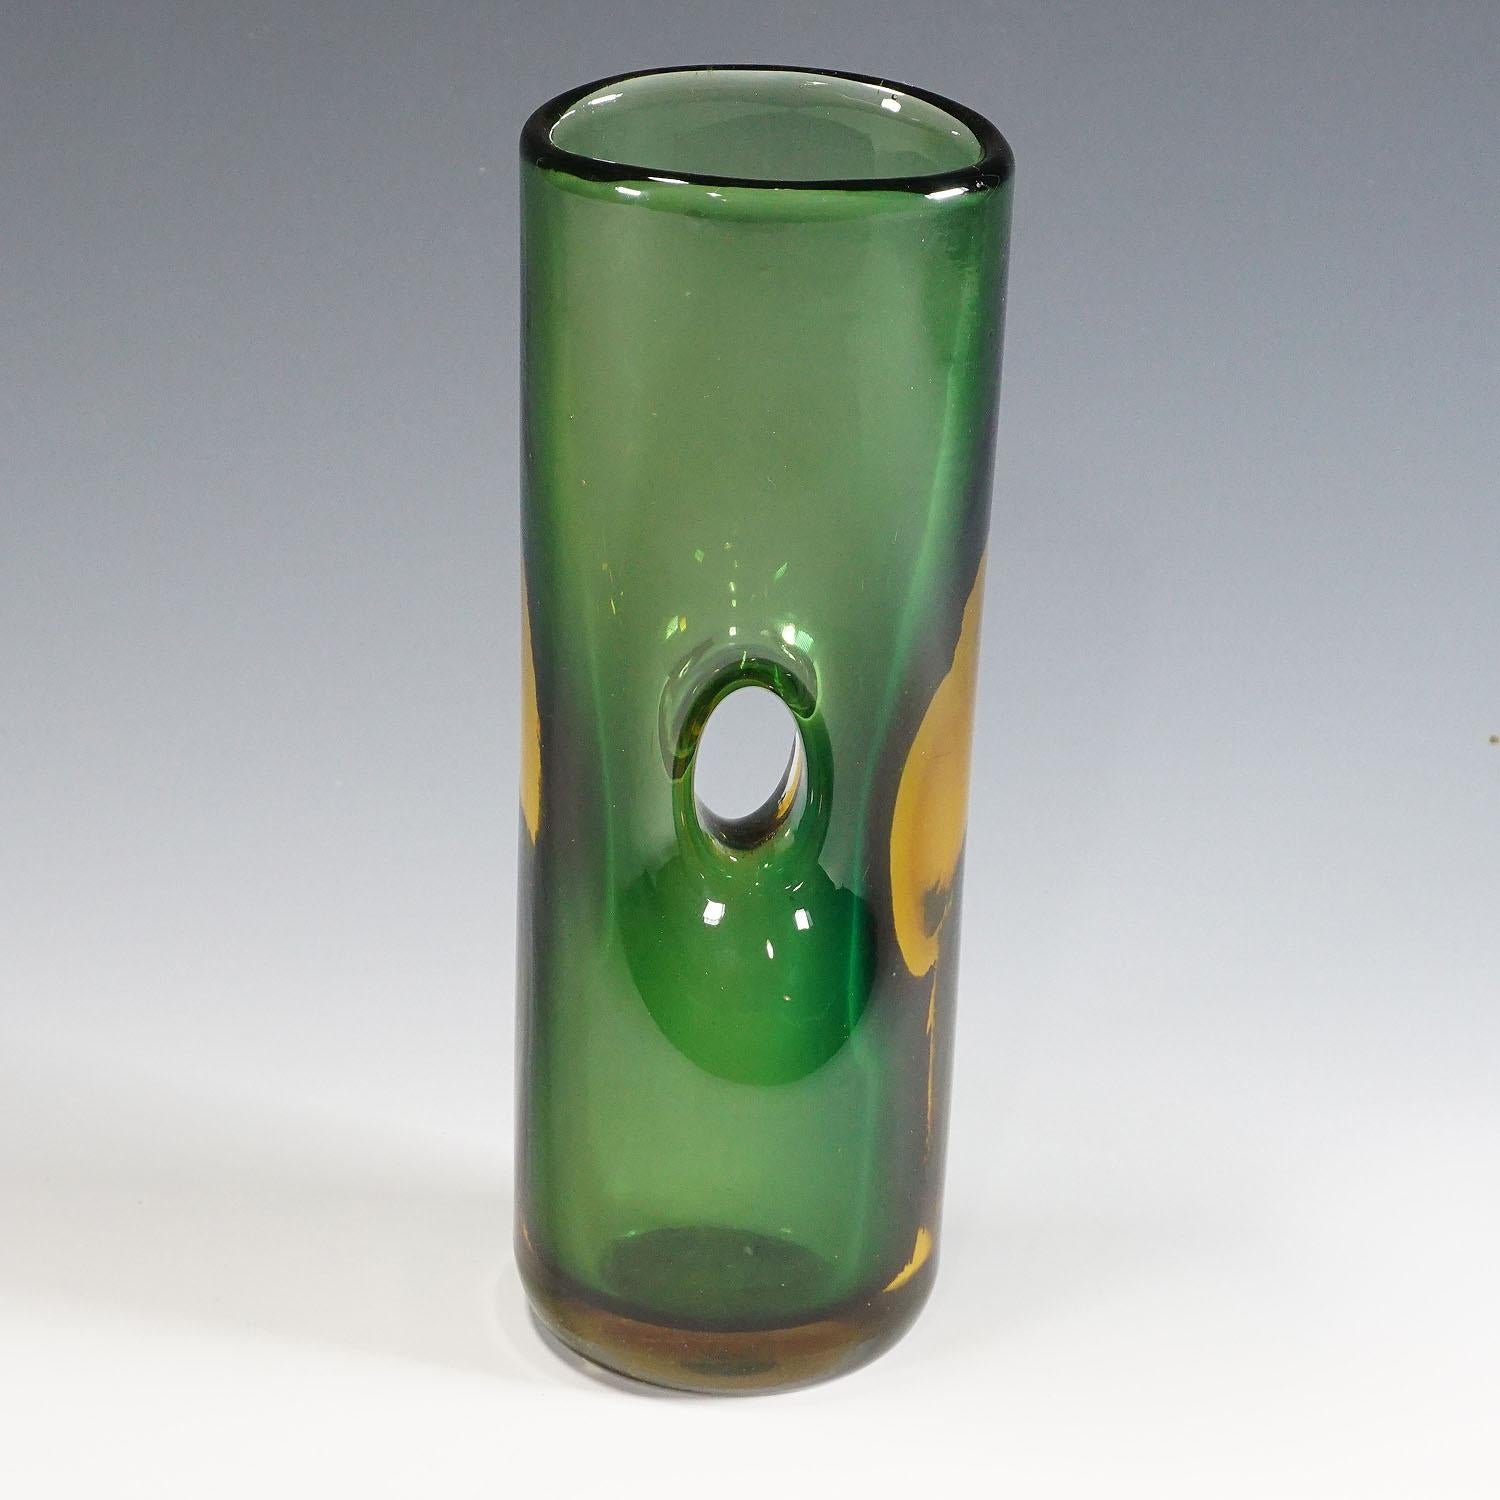 Tan France Auktion Pick

Eine Forato-Vase aus grünem und bernsteinfarbenem Glas, entworfen von Fulvio Bianconi 1951, hergestellt von Venini, Venedig, Italien, ca. 1950er Jahre. Das Kunstglas ist mit der geätzten Signatur 'venini murano italia' auf